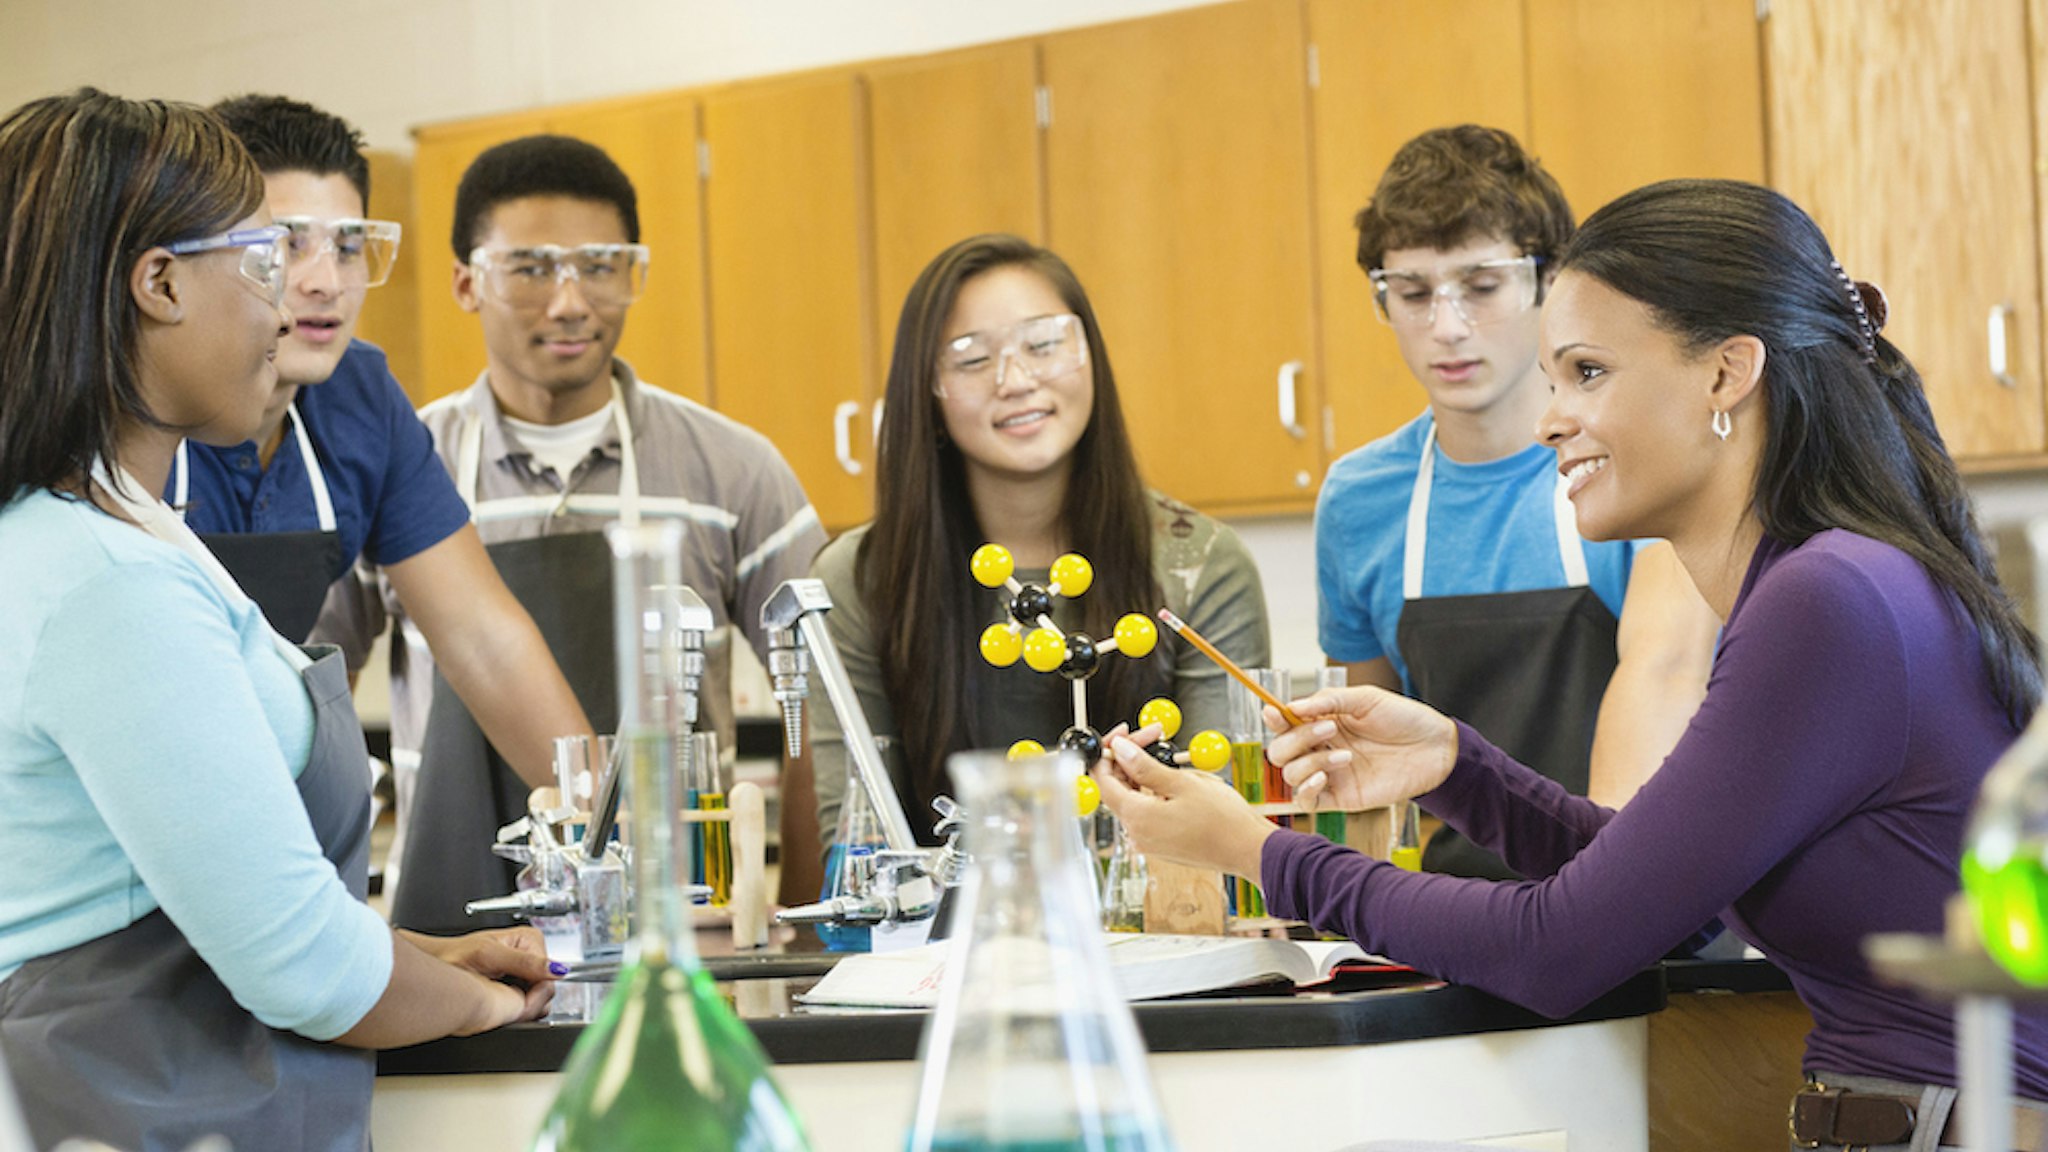 Teacher explaining chemistry model to students (Jon Feingersh Photography Inc/Getty Images)